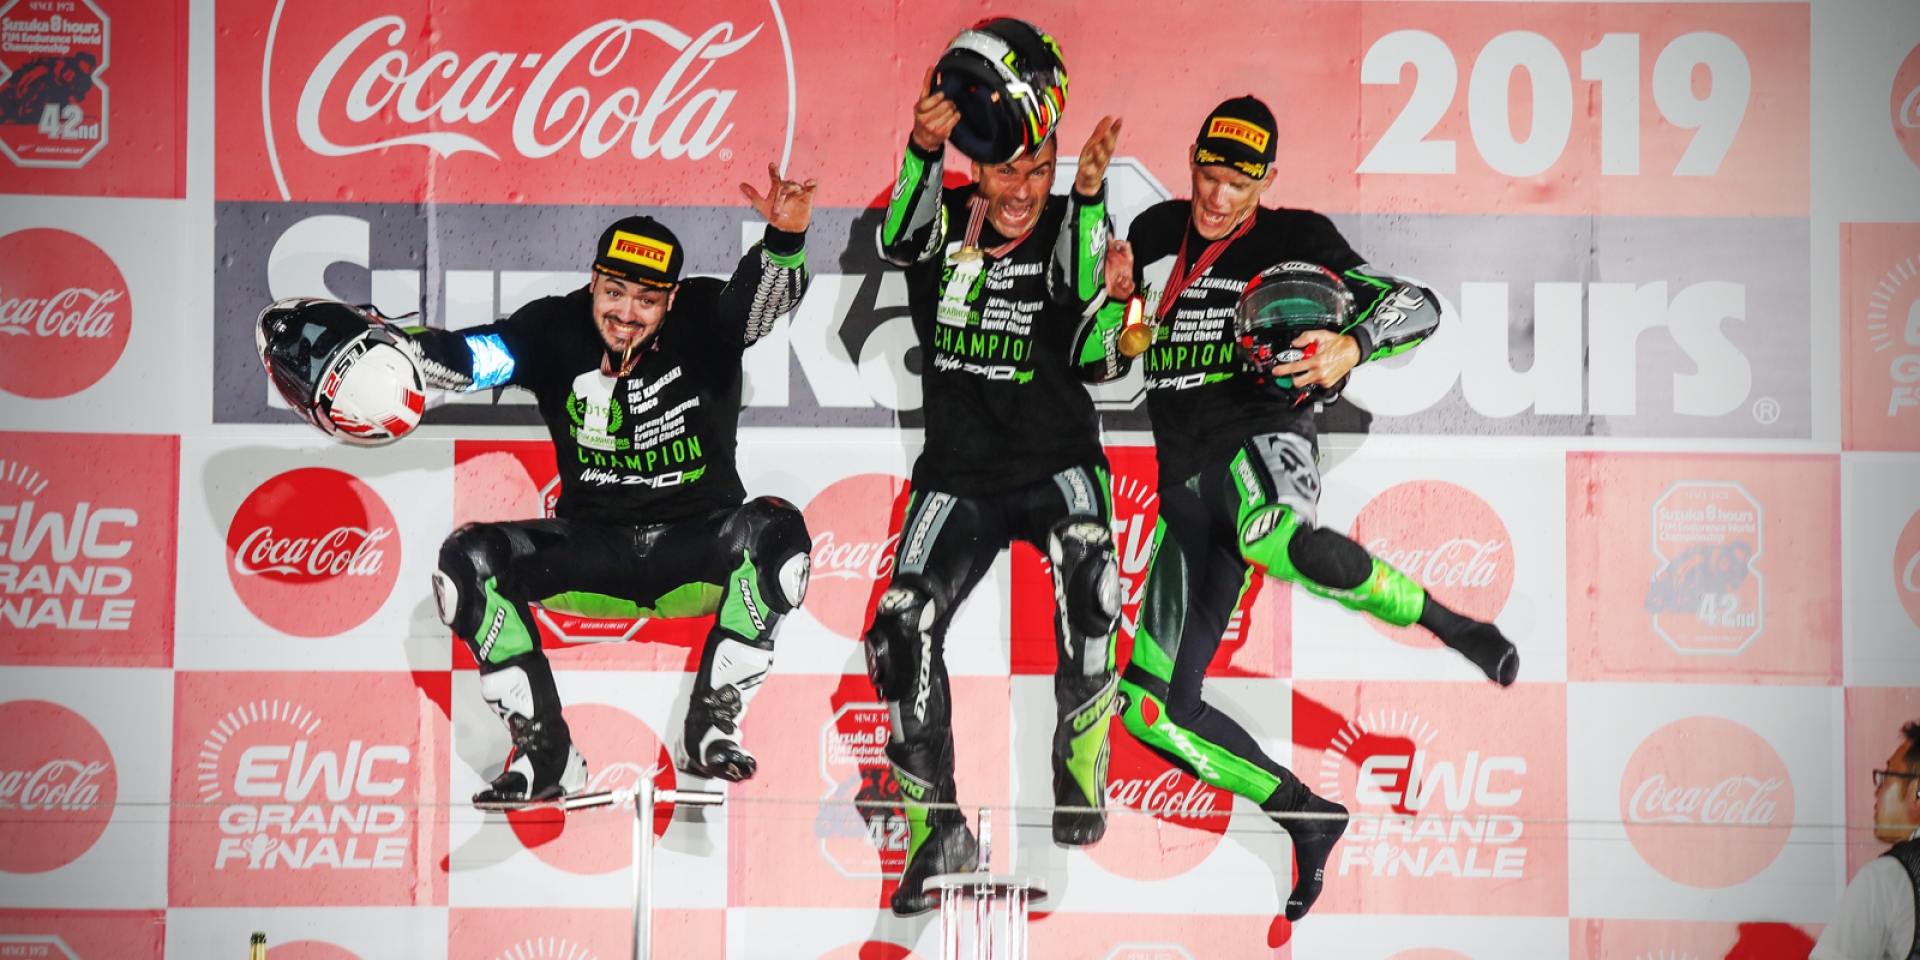 官方新聞稿。倍耐力與SRC Kawasaki France車隊贏得2019世界摩托車耐久錦標年度總冠軍